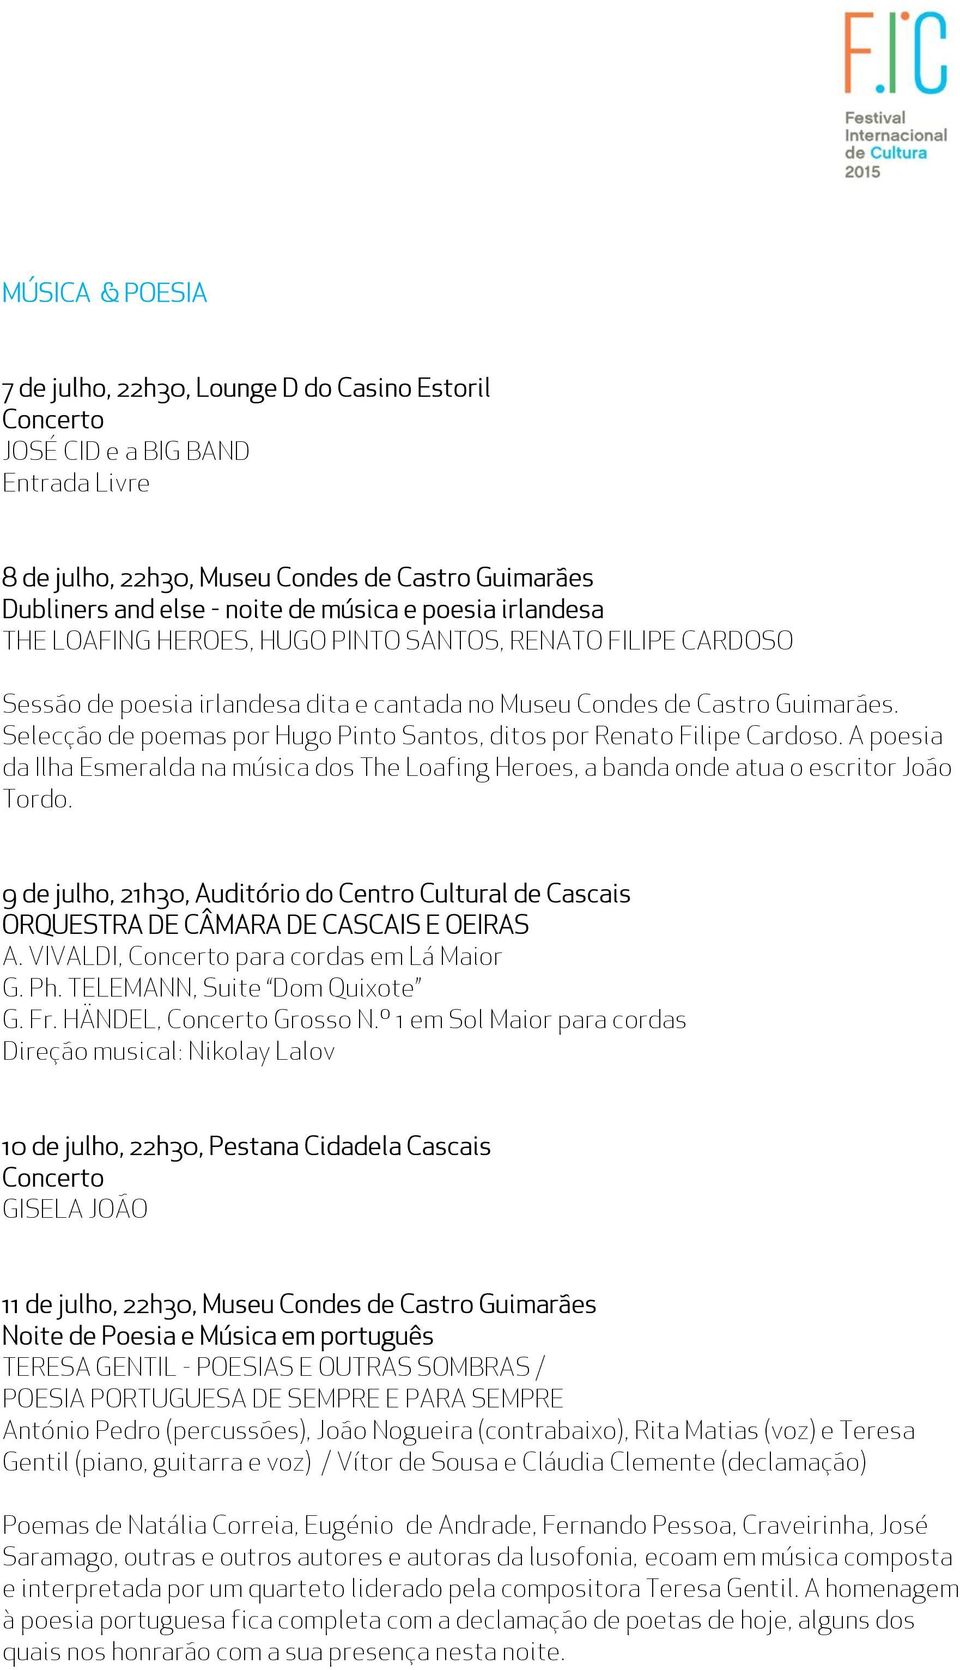 Selecção de poemas por Hugo Pinto Santos, ditos por Renato Filipe Cardoso. A poesia da Ilha Esmeralda na música dos The Loafing Heroes, a banda onde atua o escritor João Tordo.